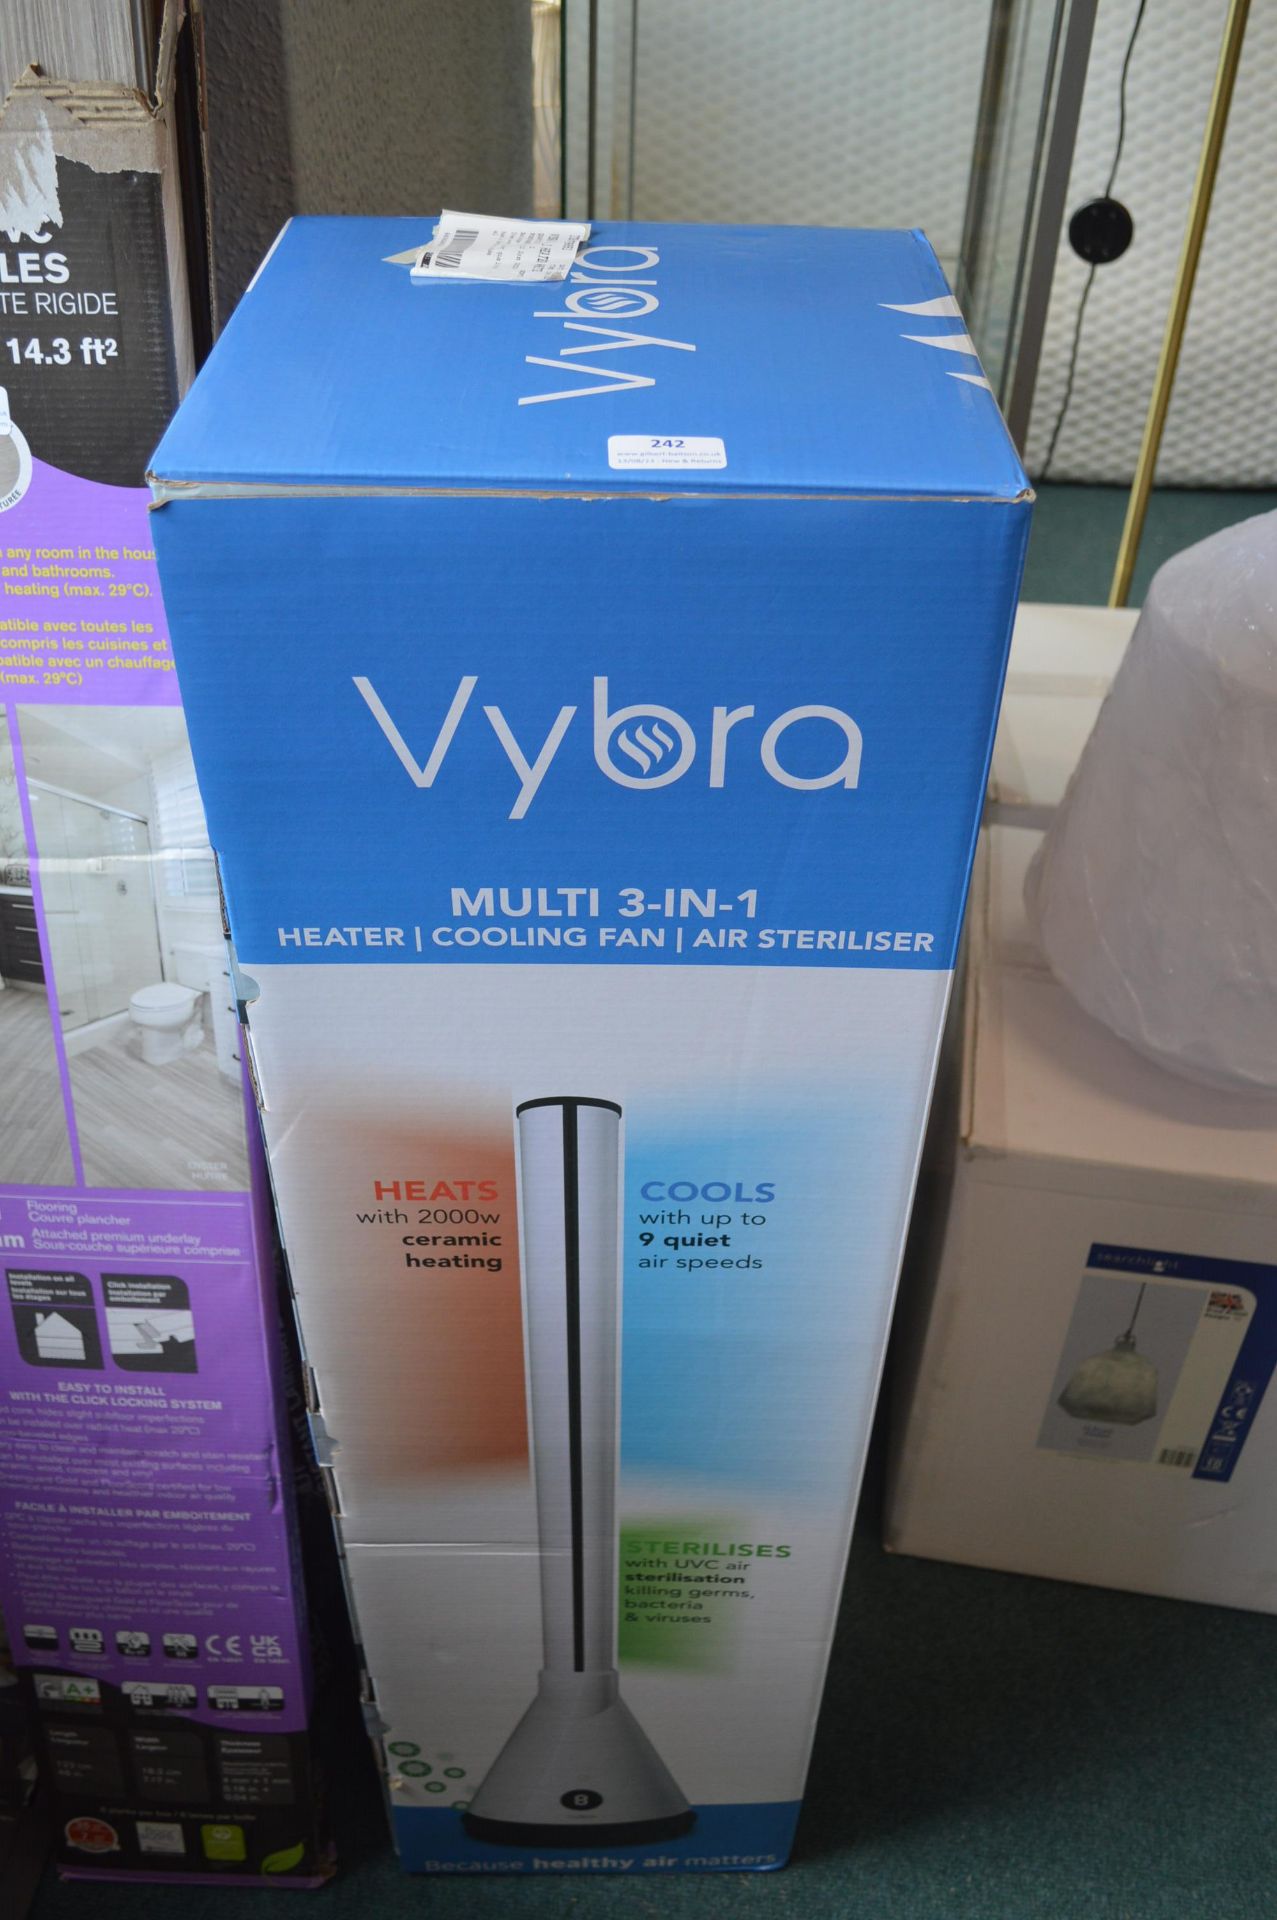 *Vybra Multi 3-in-1 Heater/Fan/Air Steriliser